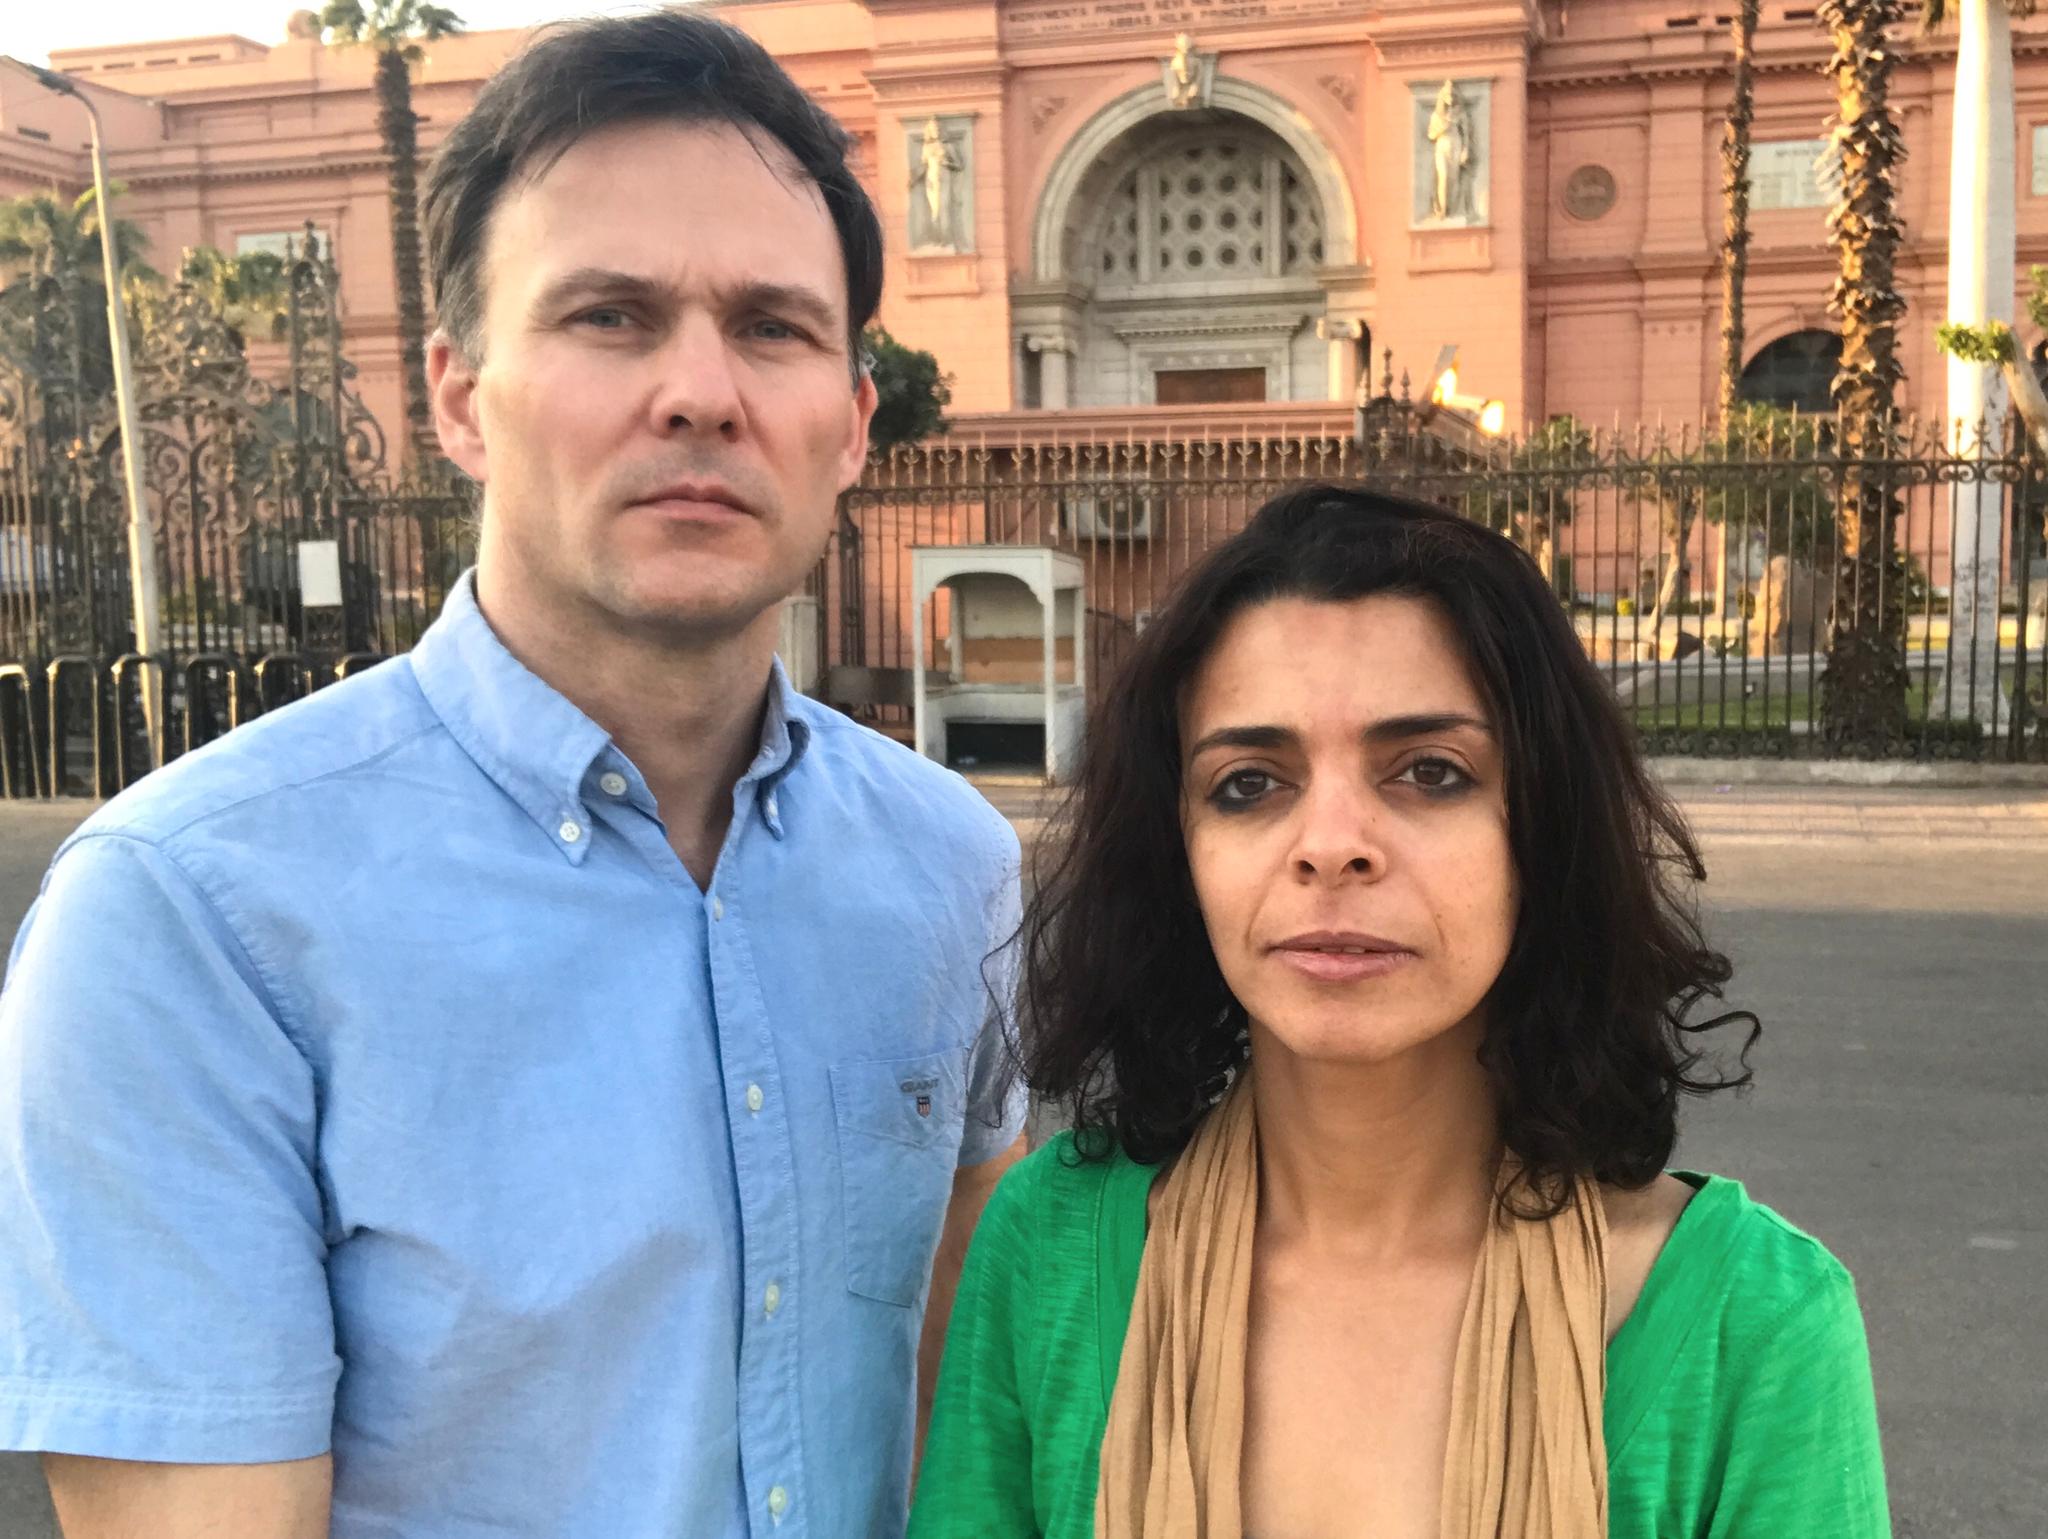 Aftenpostens Midtøsten-korrespondent Tor Arne Andreassen og fotograf Asmaa Waguih rapporterer fra Kairo i Egypt.